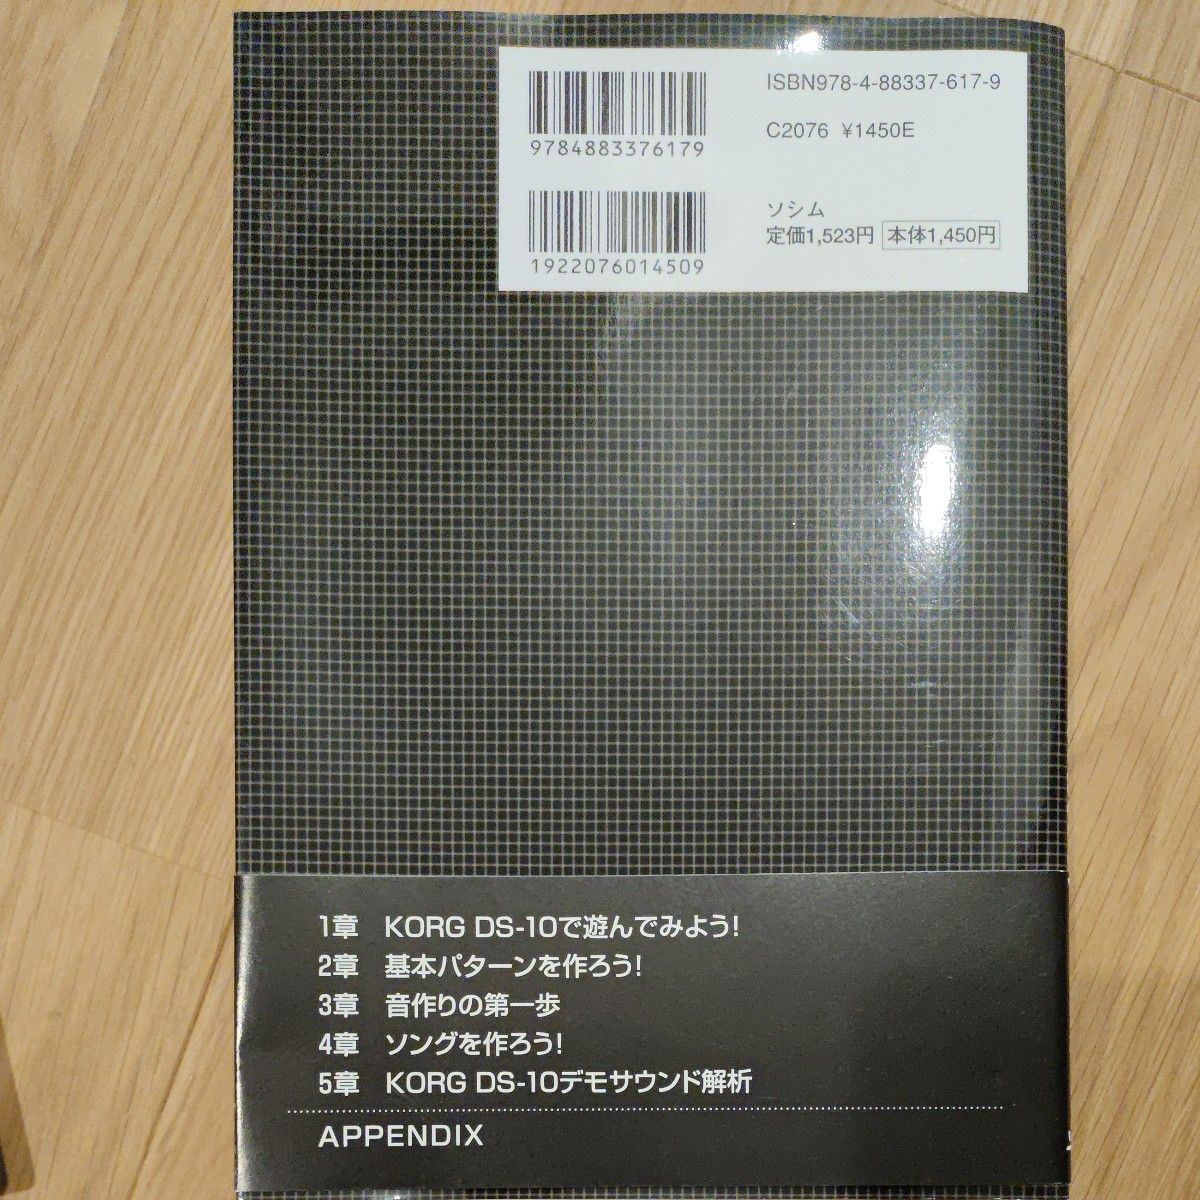 ニンテンドーDSソフト KORG DS-10 ソフトと公式ガイド本のセット